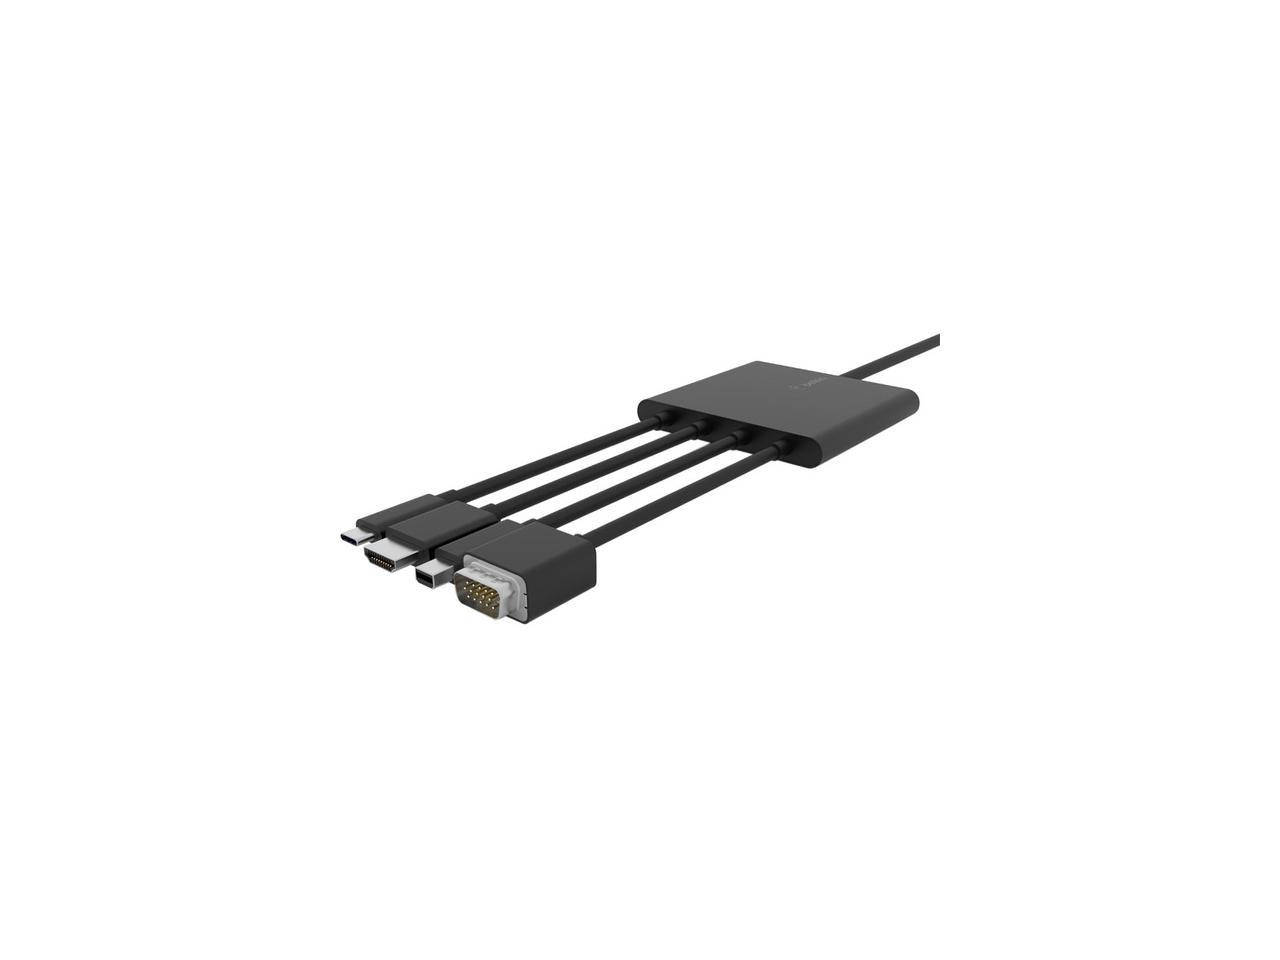 BELKIN COMPONENTS B2B166 MULTIPORT TO HDMI DIGITAL AV ADAPTER